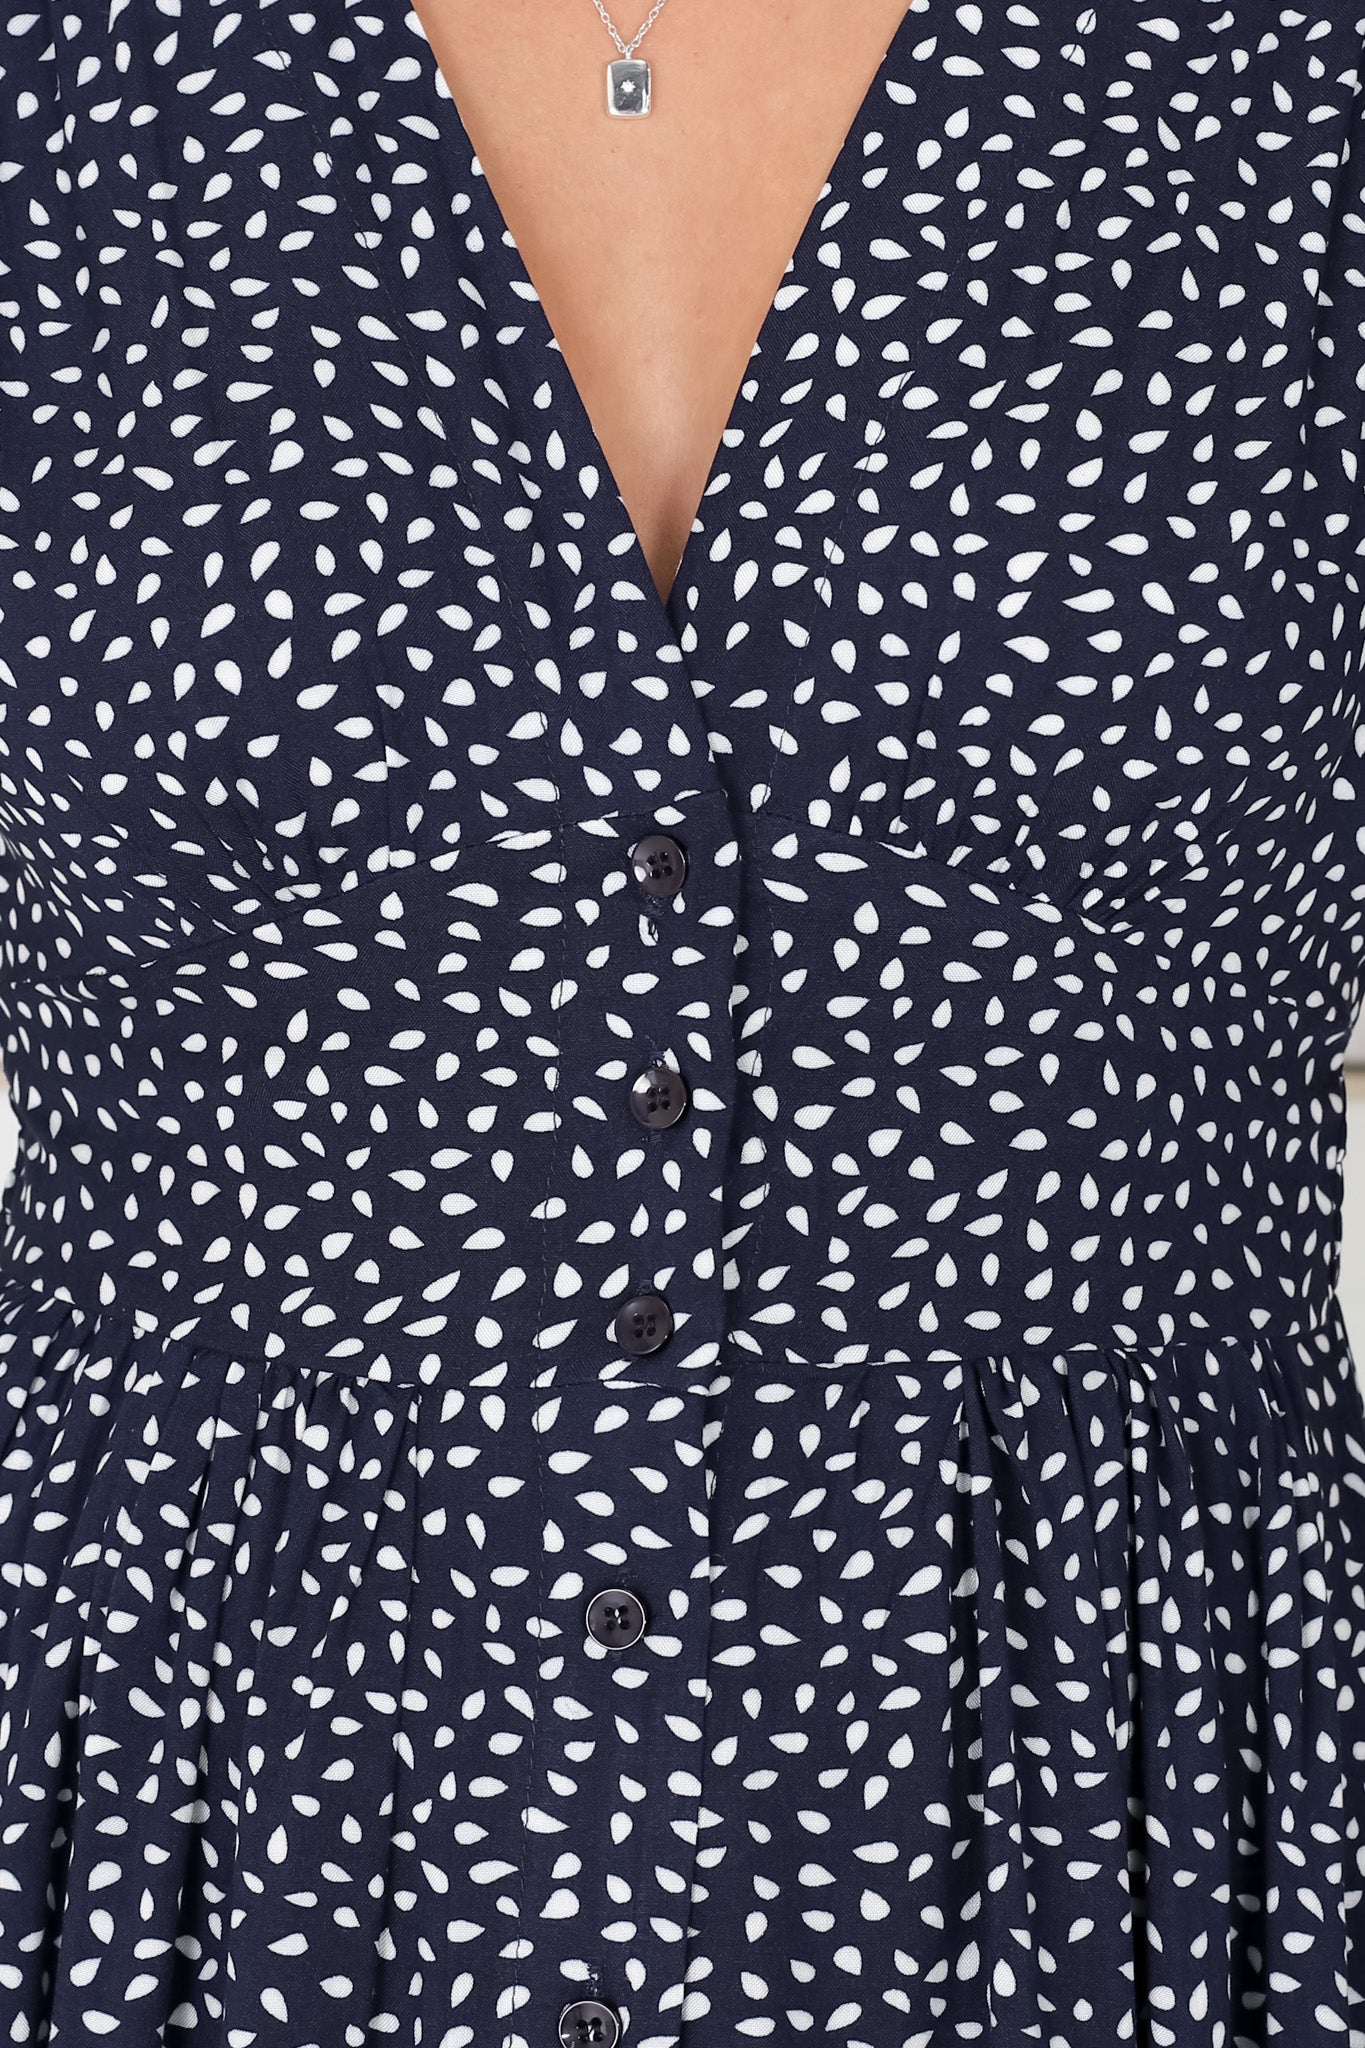 Anais Midi Dress - Cap Flutter Sleeve Button Down A Line Dress in Bell Print